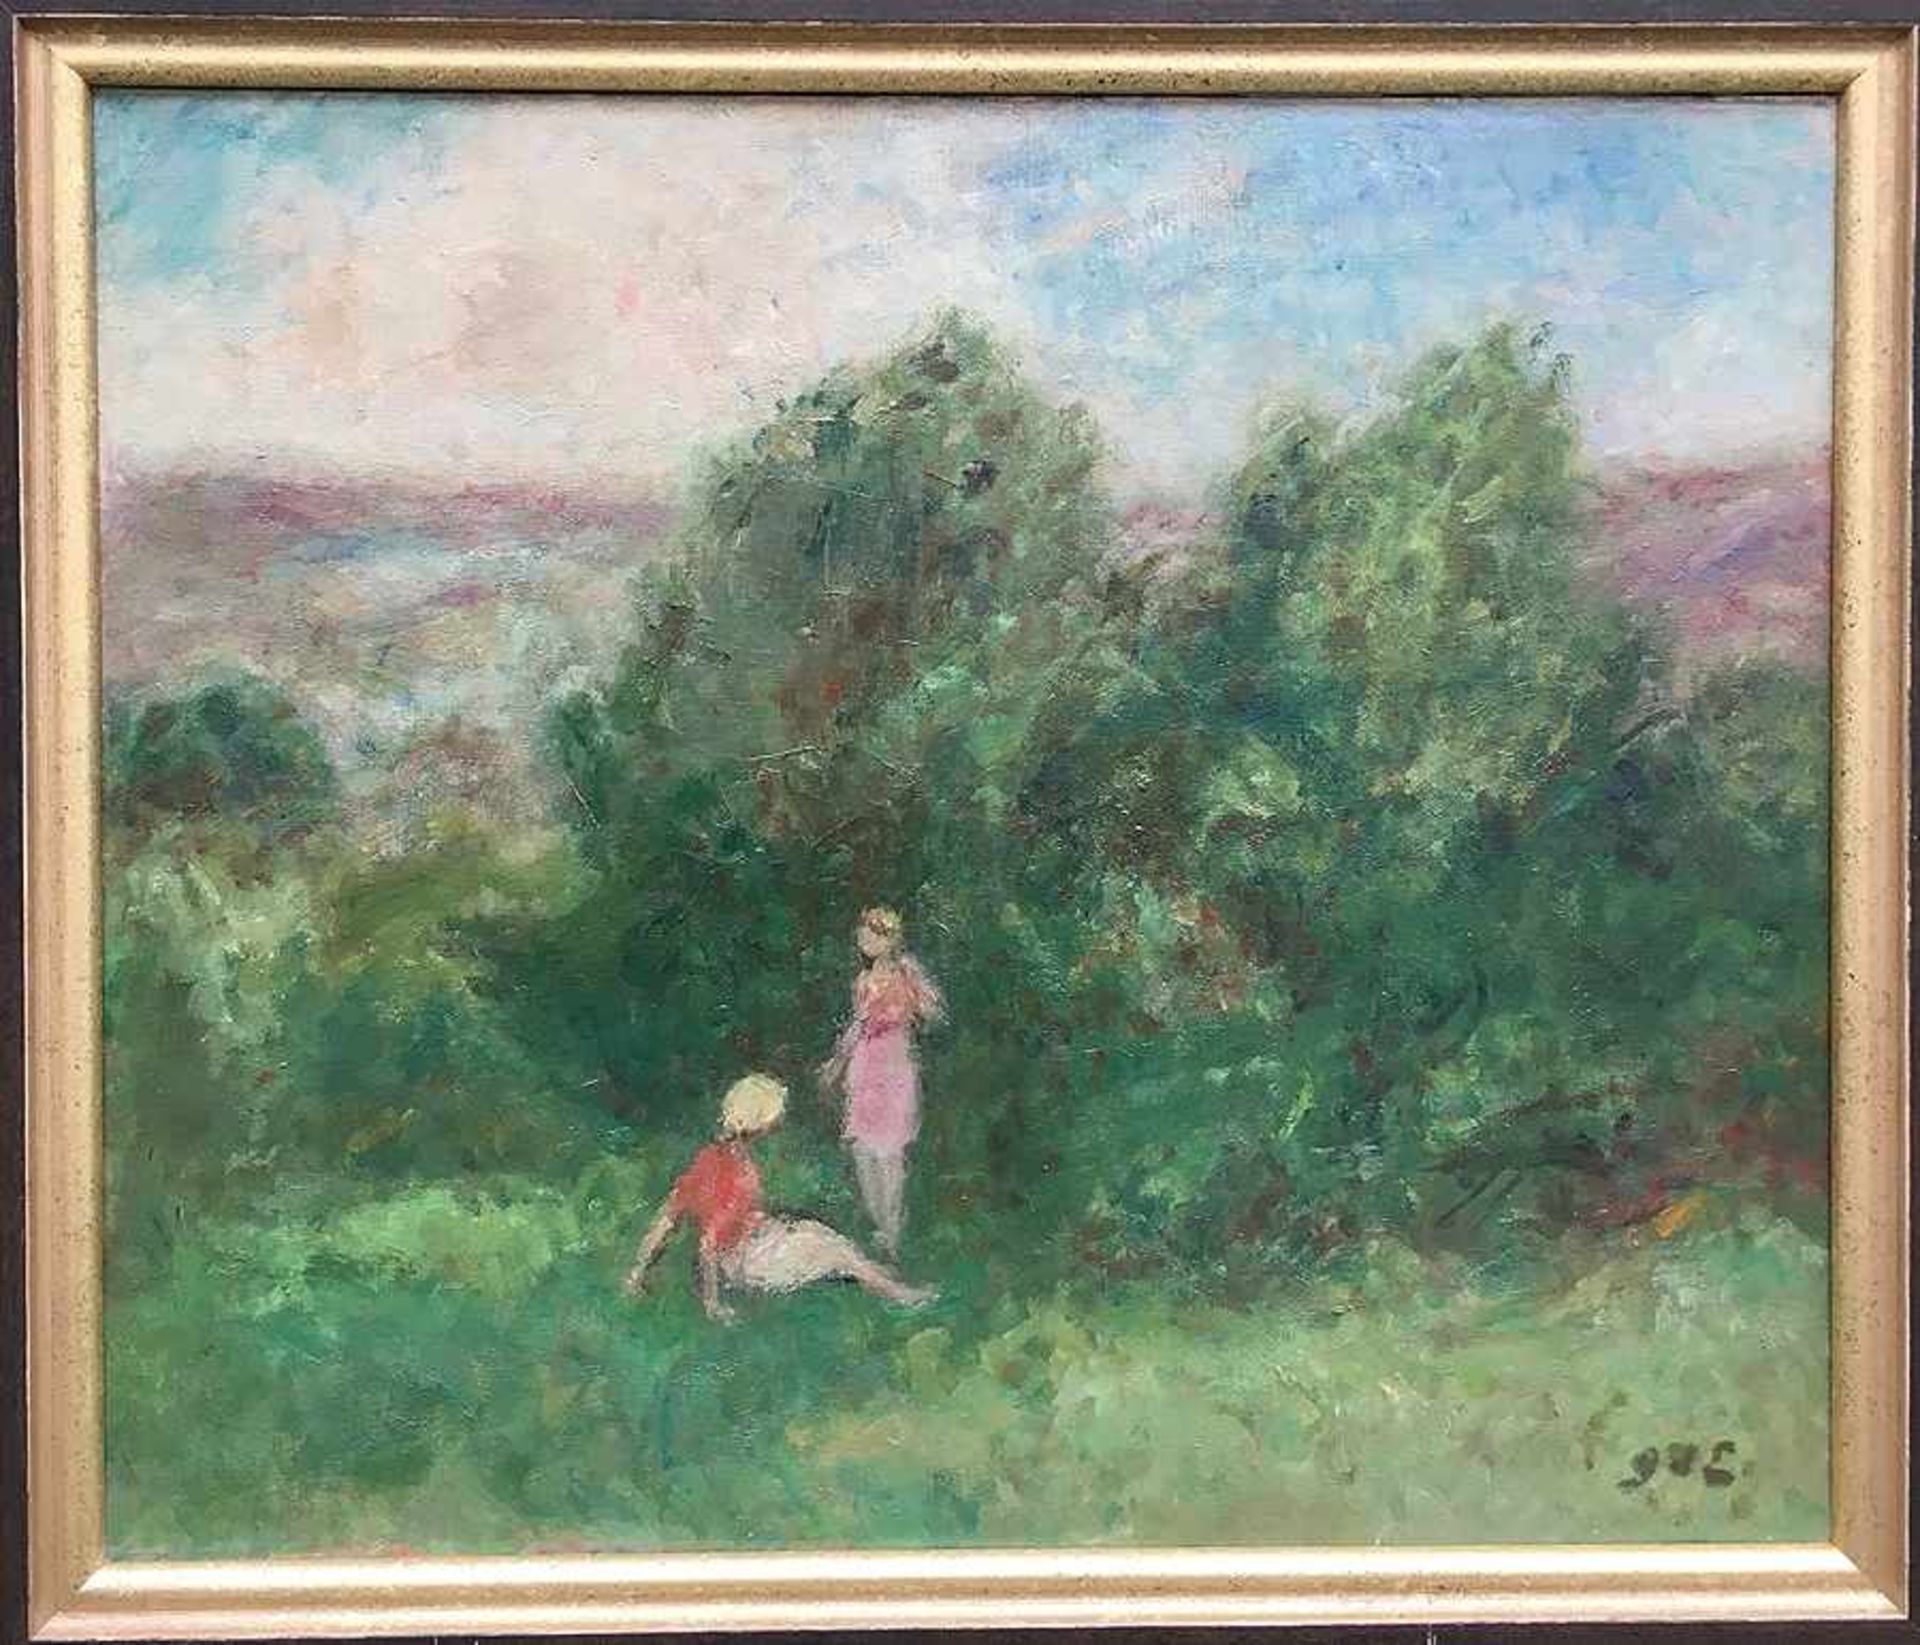 Georges d' Espagnat Paris 1870 - 1950 Zwei Mädchen in Sommerlandschaft Öl auf Lwd; H 55 cm, B 65 cm;